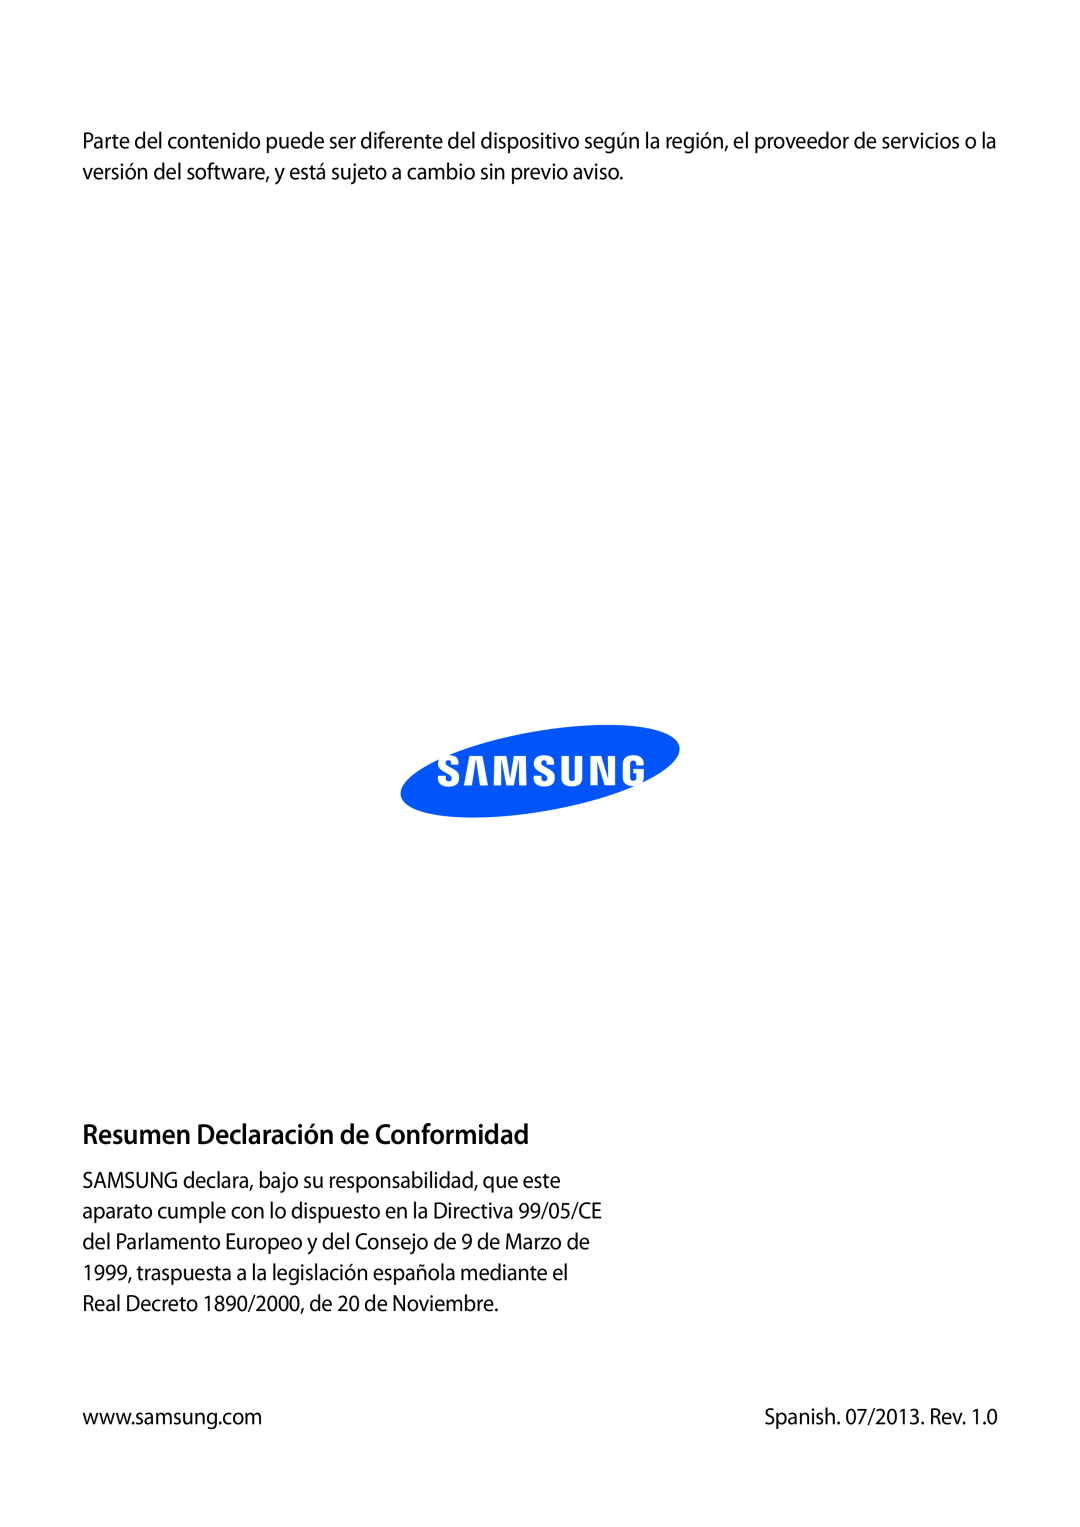 Samsung GT-I9195ZKAATO, GT-I9195ZKADBT, GT-I9195ZKAMEO manual Resumen Declaración de Conformidad, Spanish. 07/2013. Rev 